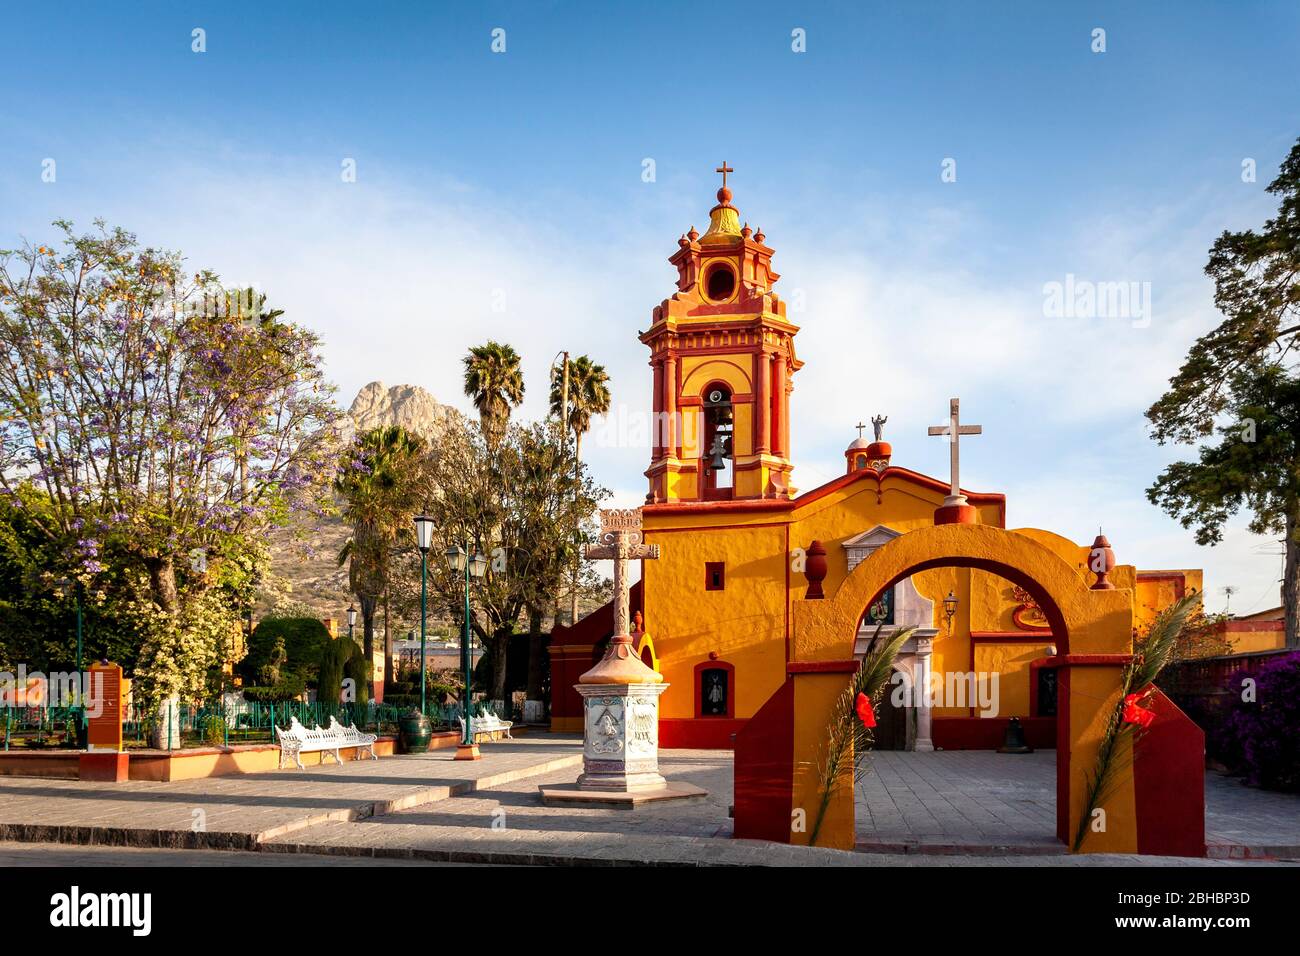 The church and monolith of Bernal, Queretaro, Mexico. Stock Photo